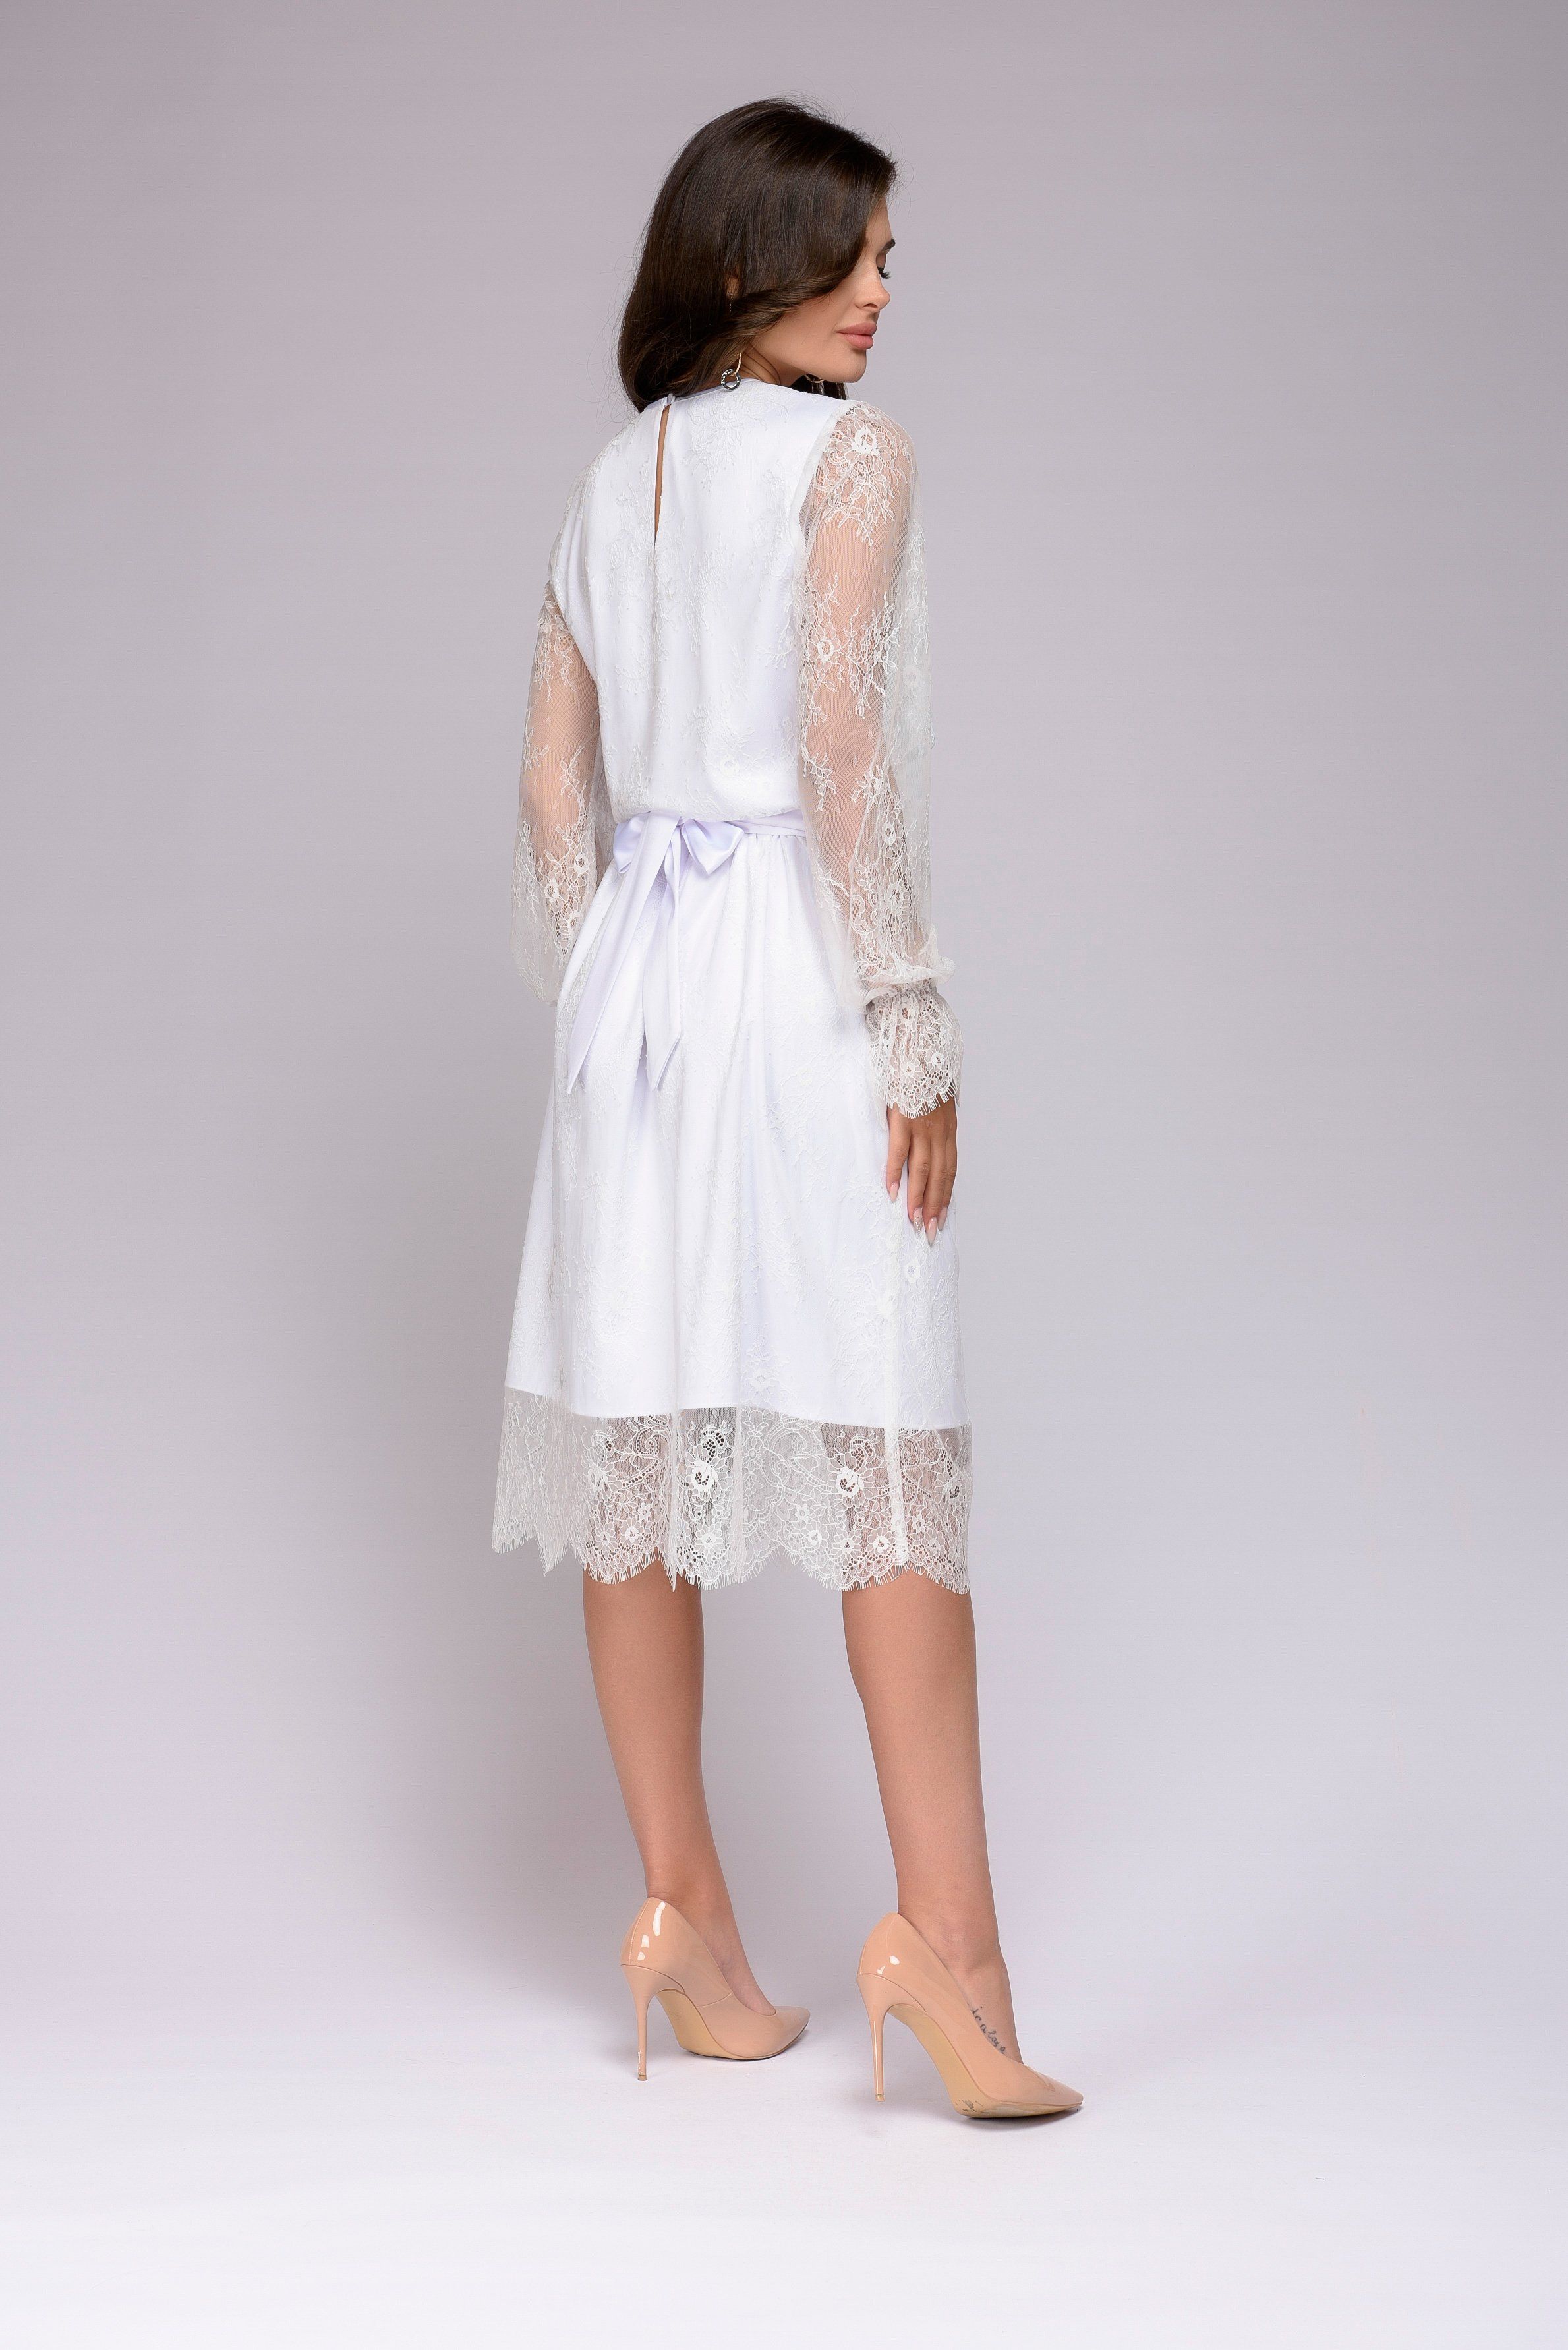 Платье белое кружевное длины миди с длинными рукавами 1001DRESS арт.DM01213WH оптом_фото3